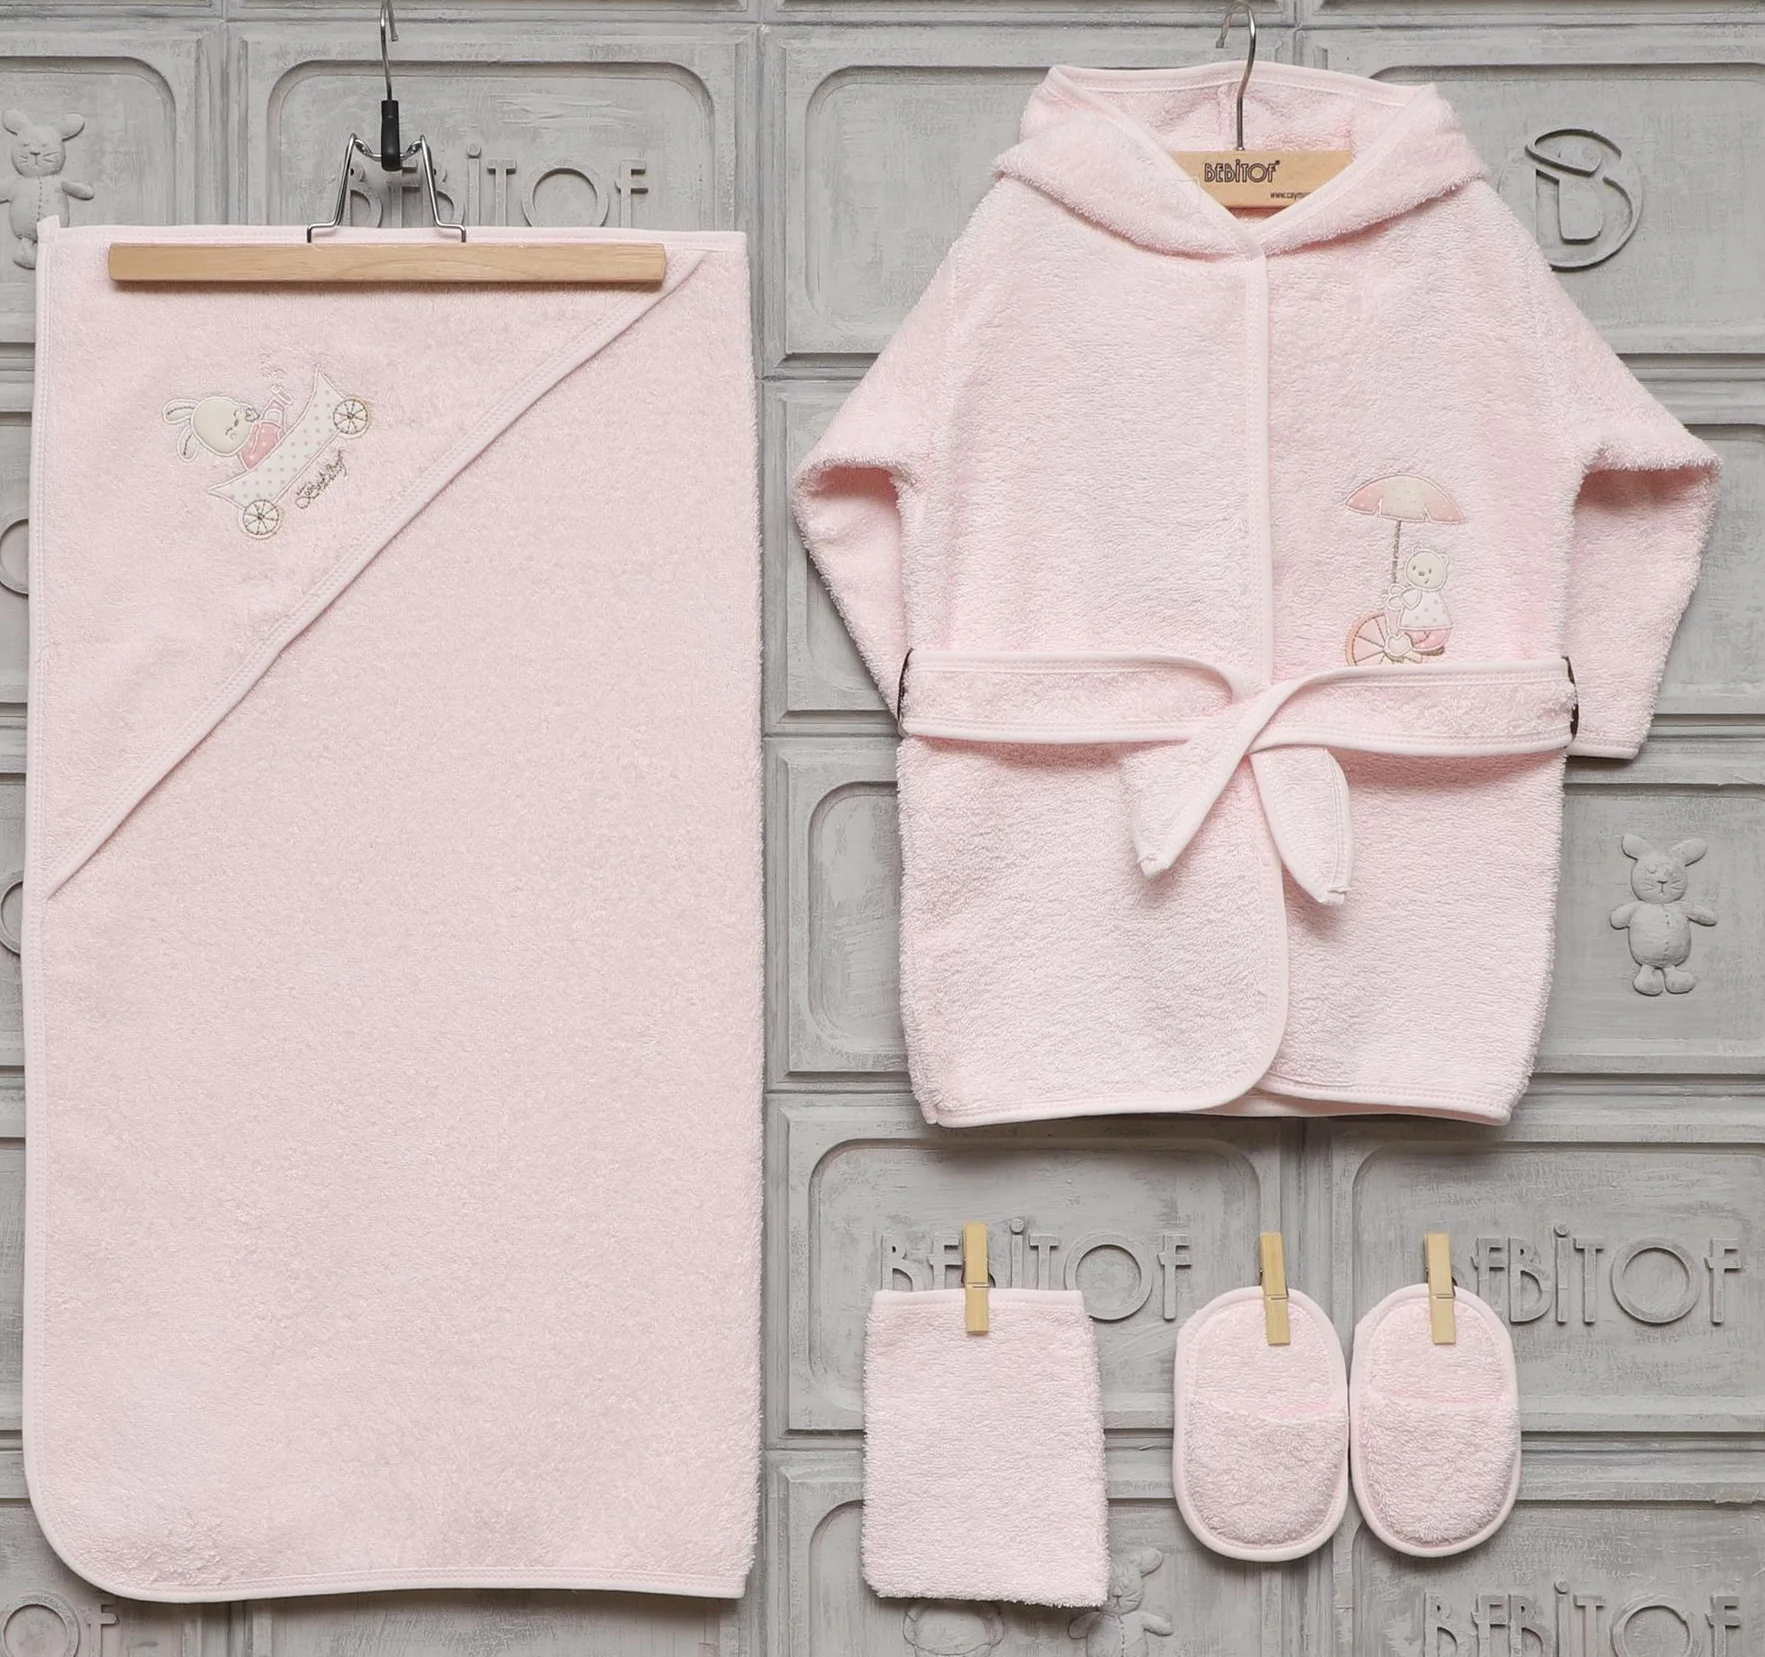 Bebitof/махровый халат из 100% хлопка для новорожденных девочек и комплект полотенец с капюшоном, Подарочный комплект из 5 предметов, розовый, для... от AliExpress RU&CIS NEW